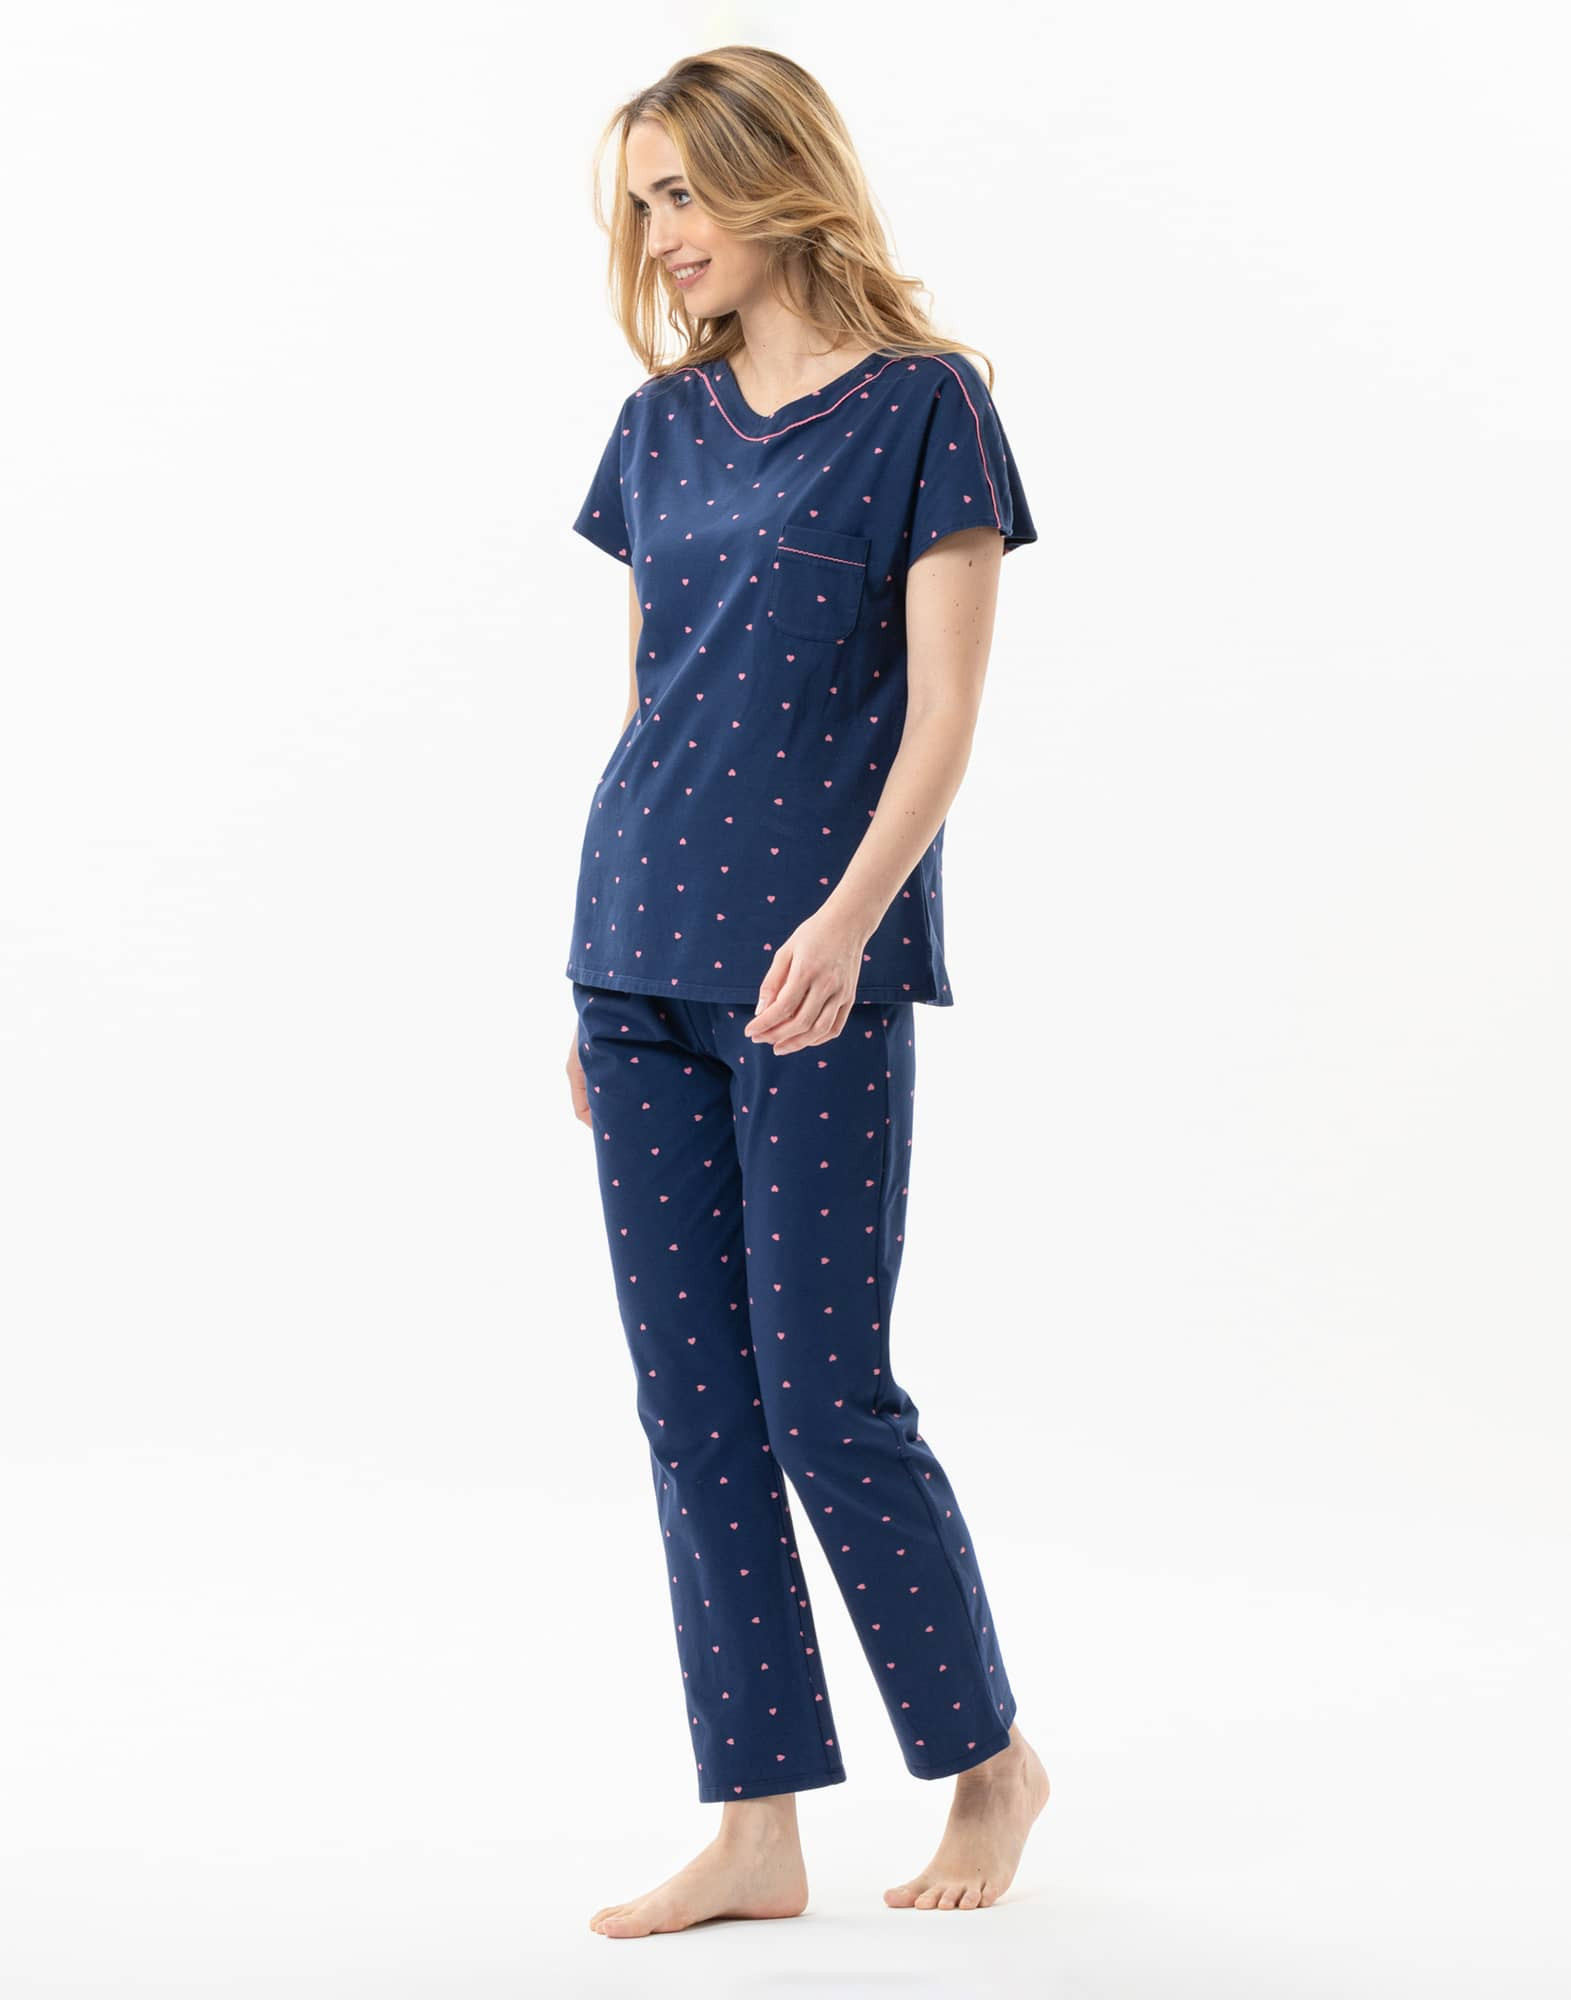 AMORE 702 navy cotton pyjamas